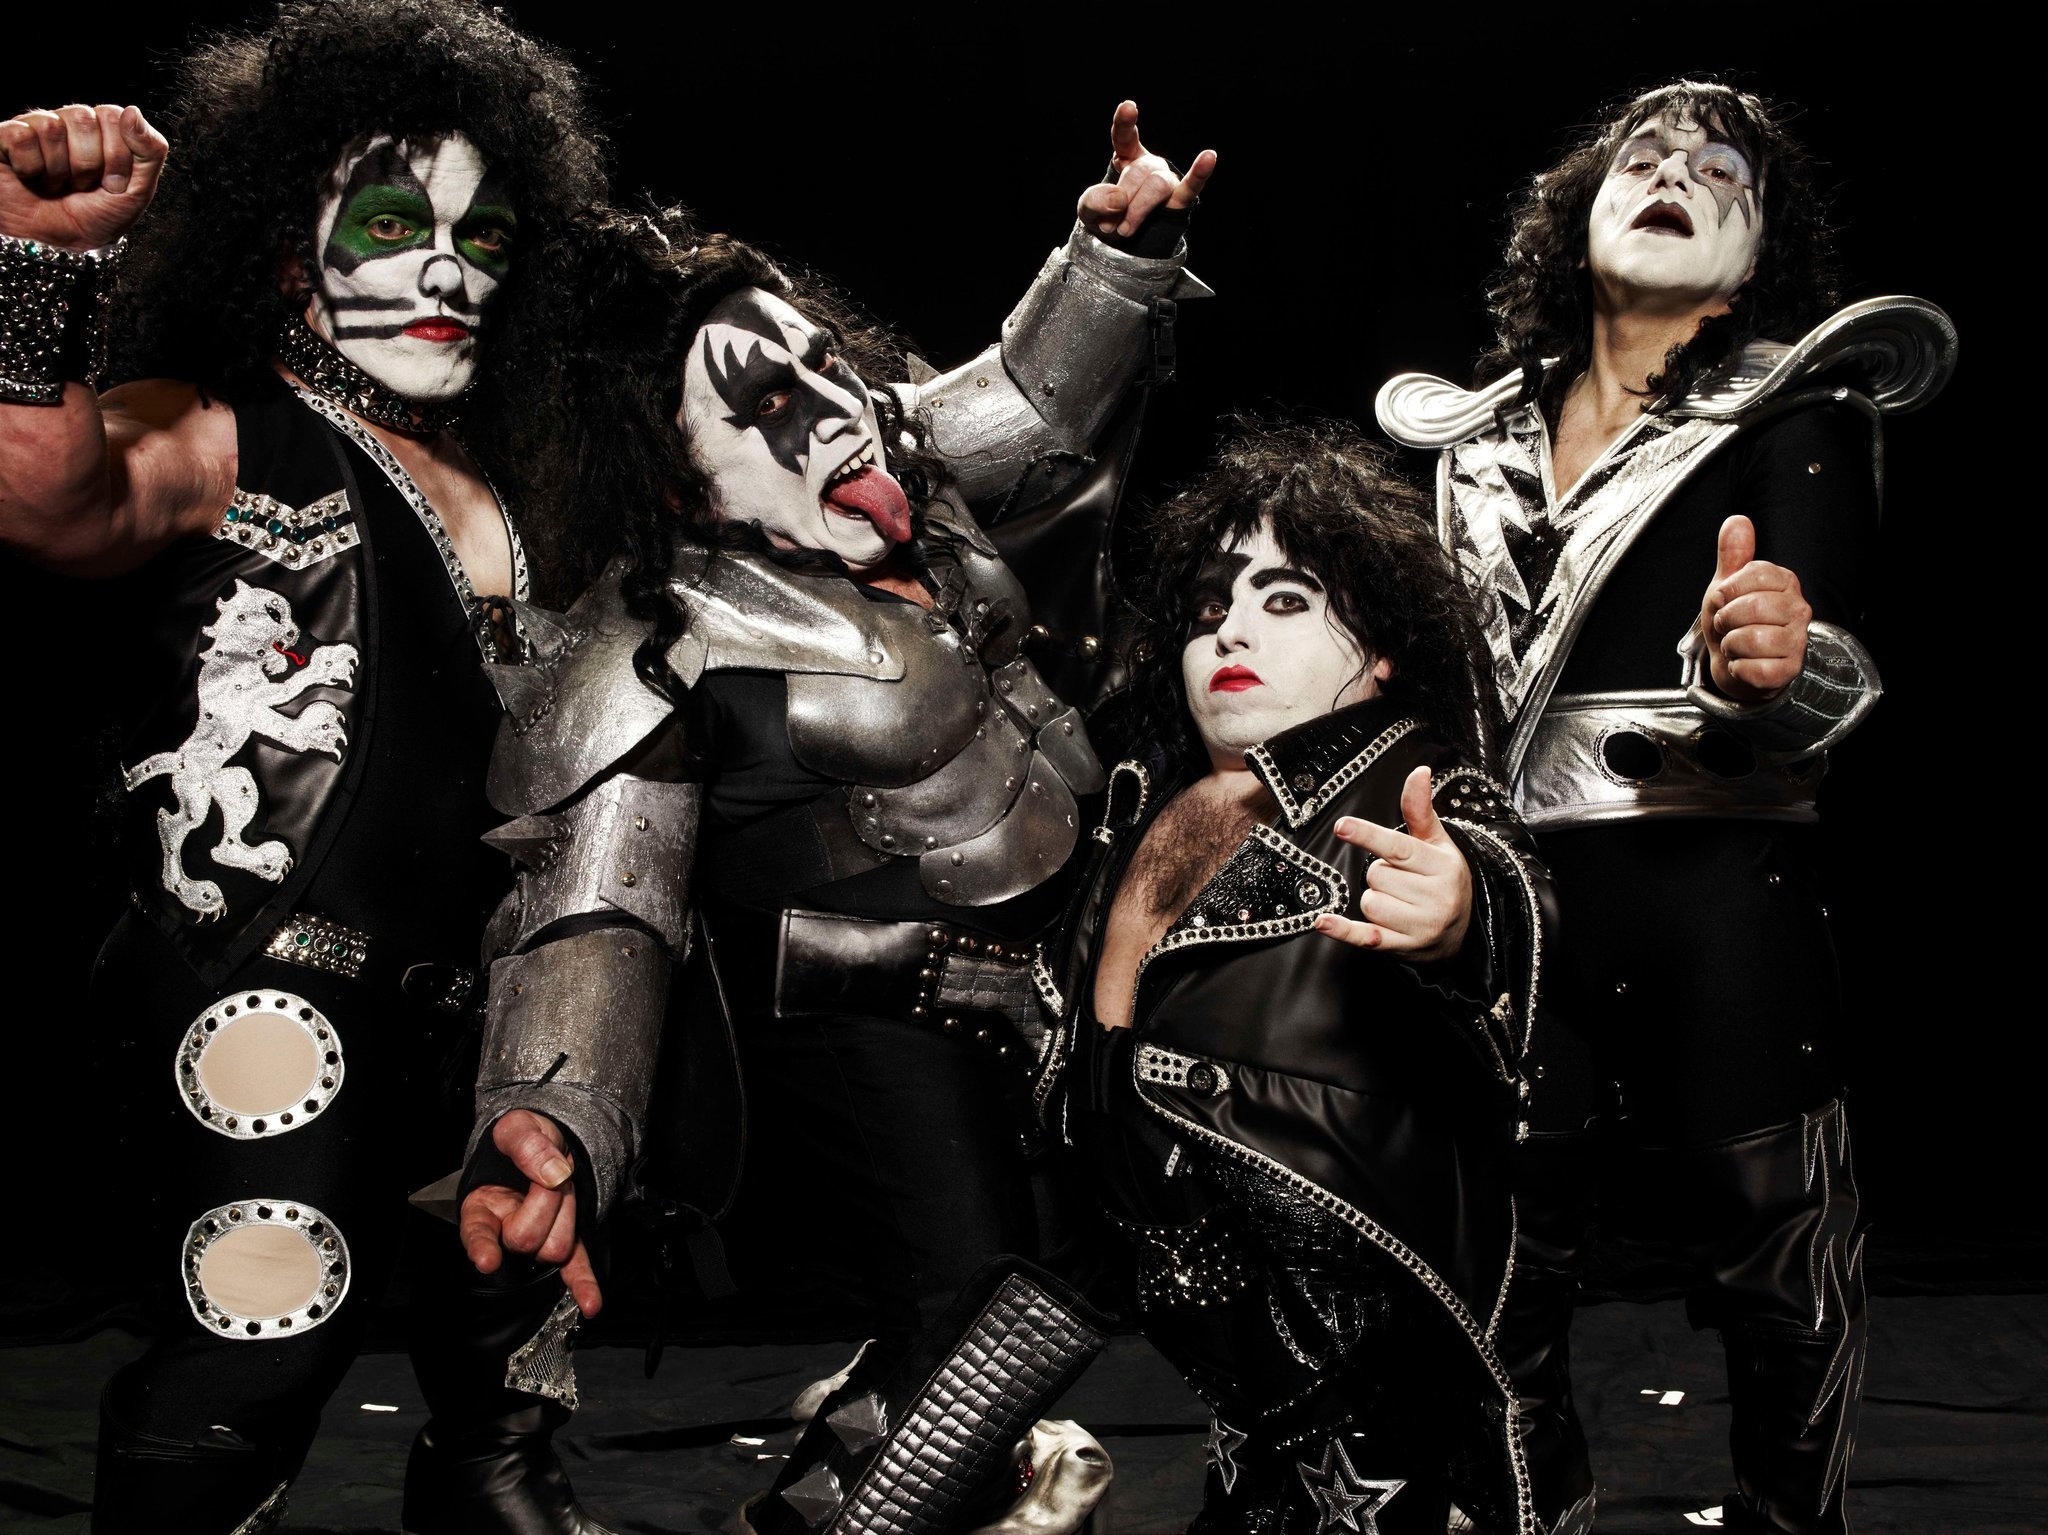 2048x1535 Kiss wallpaper, heavy metal rock bands humor | Wallpaper